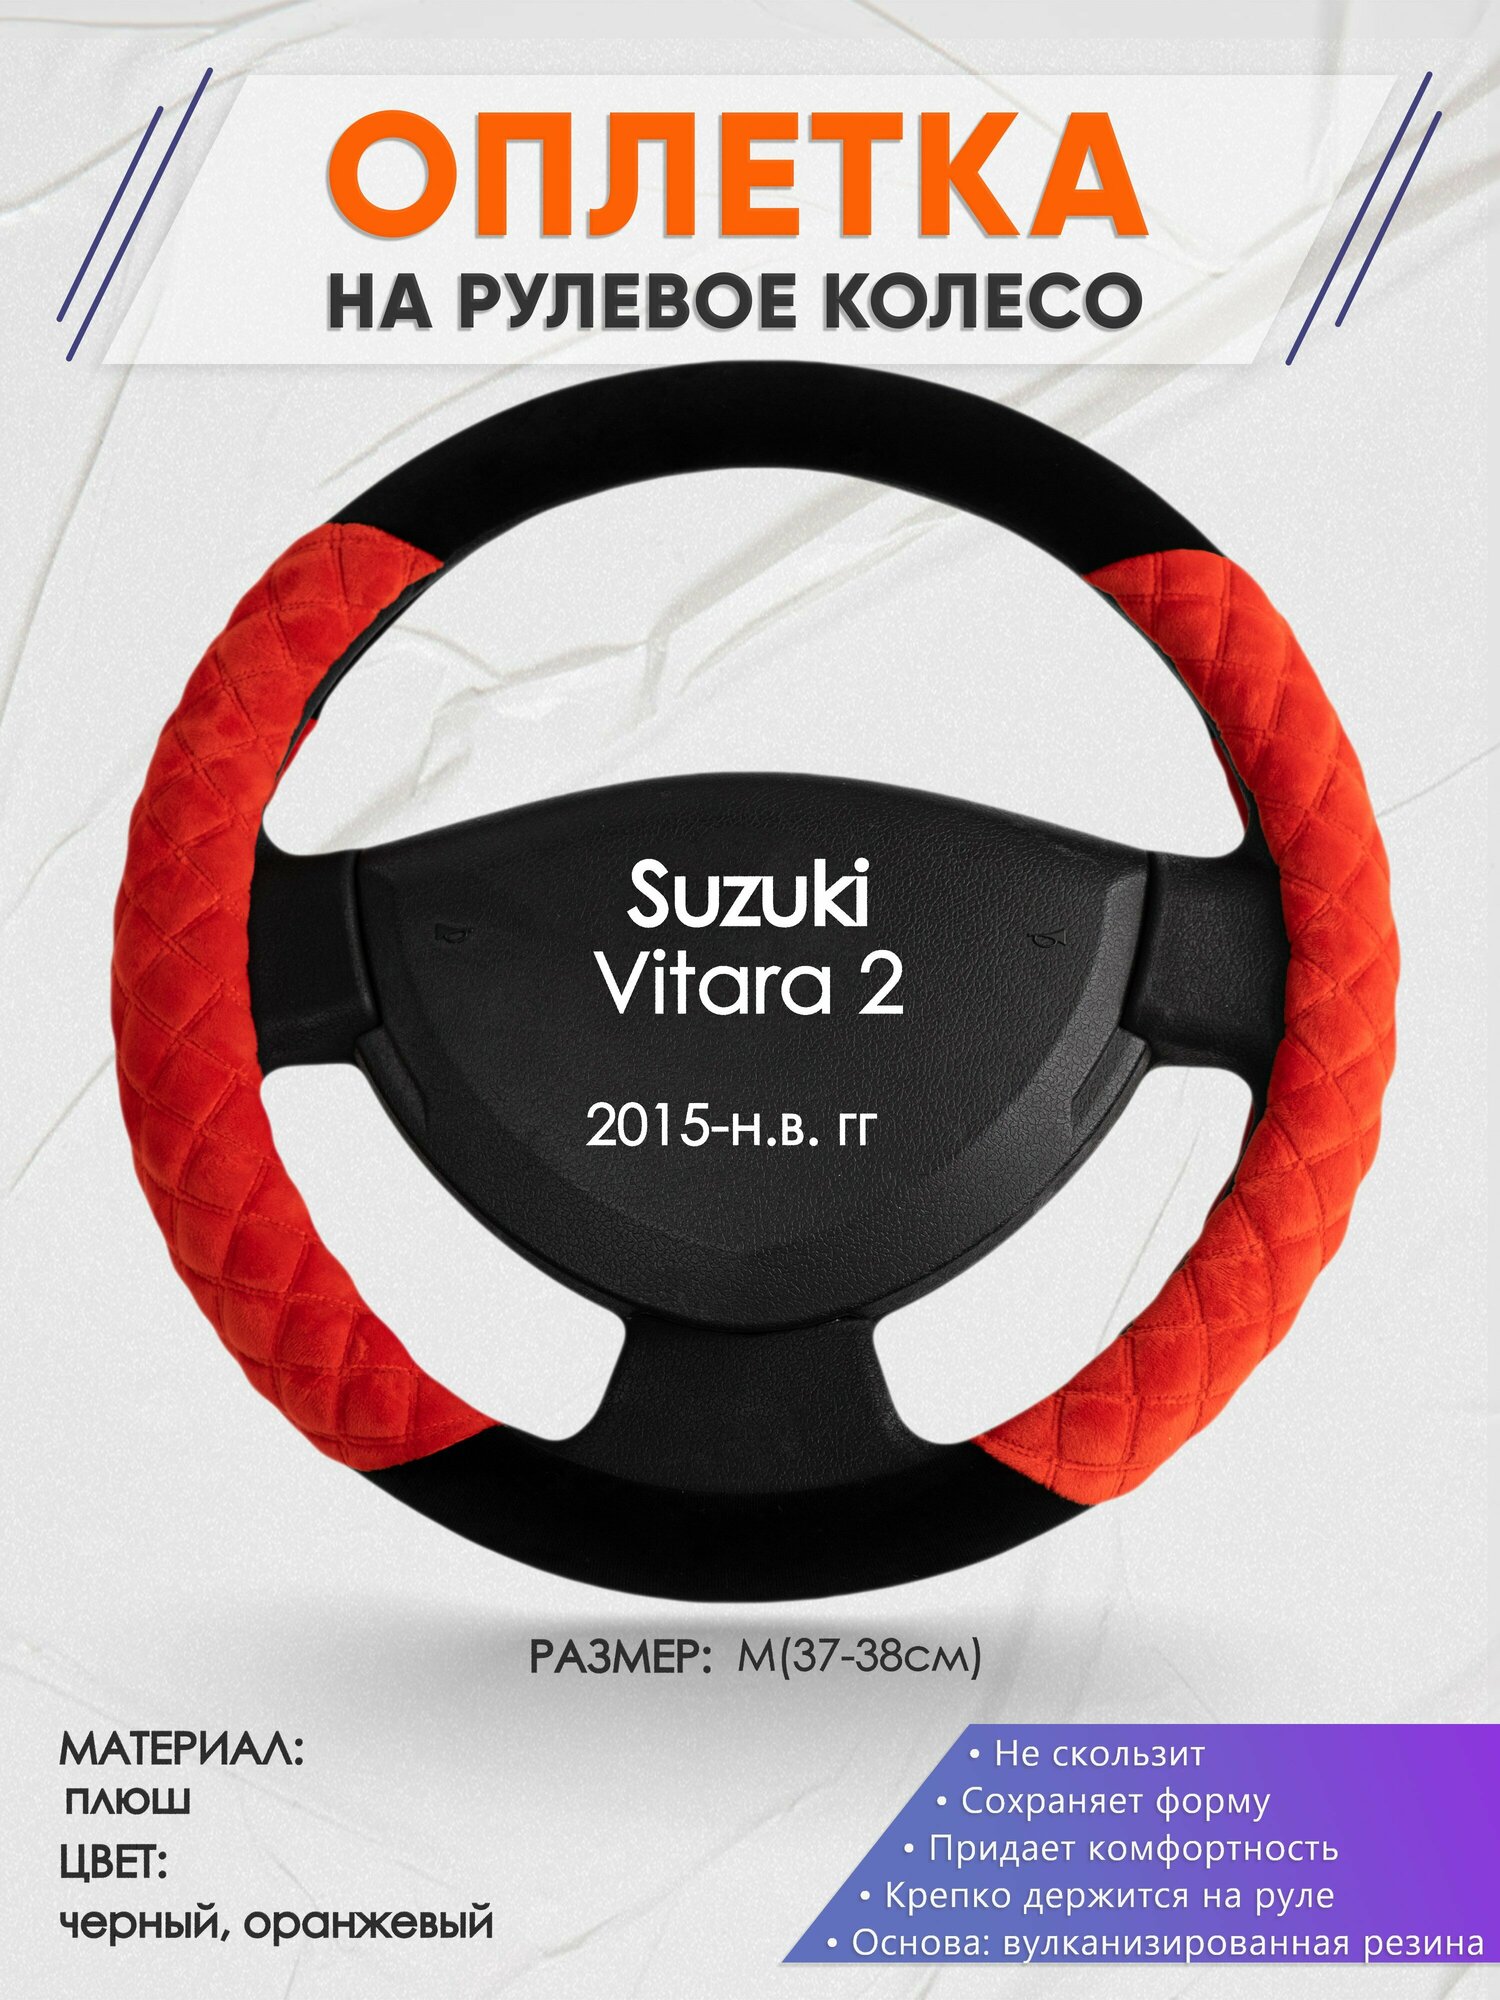 Оплетка на руль для Suzuki Vitara 2(Сузуки Витара 2) 2015-н. в, M(37-38см), Замша 37